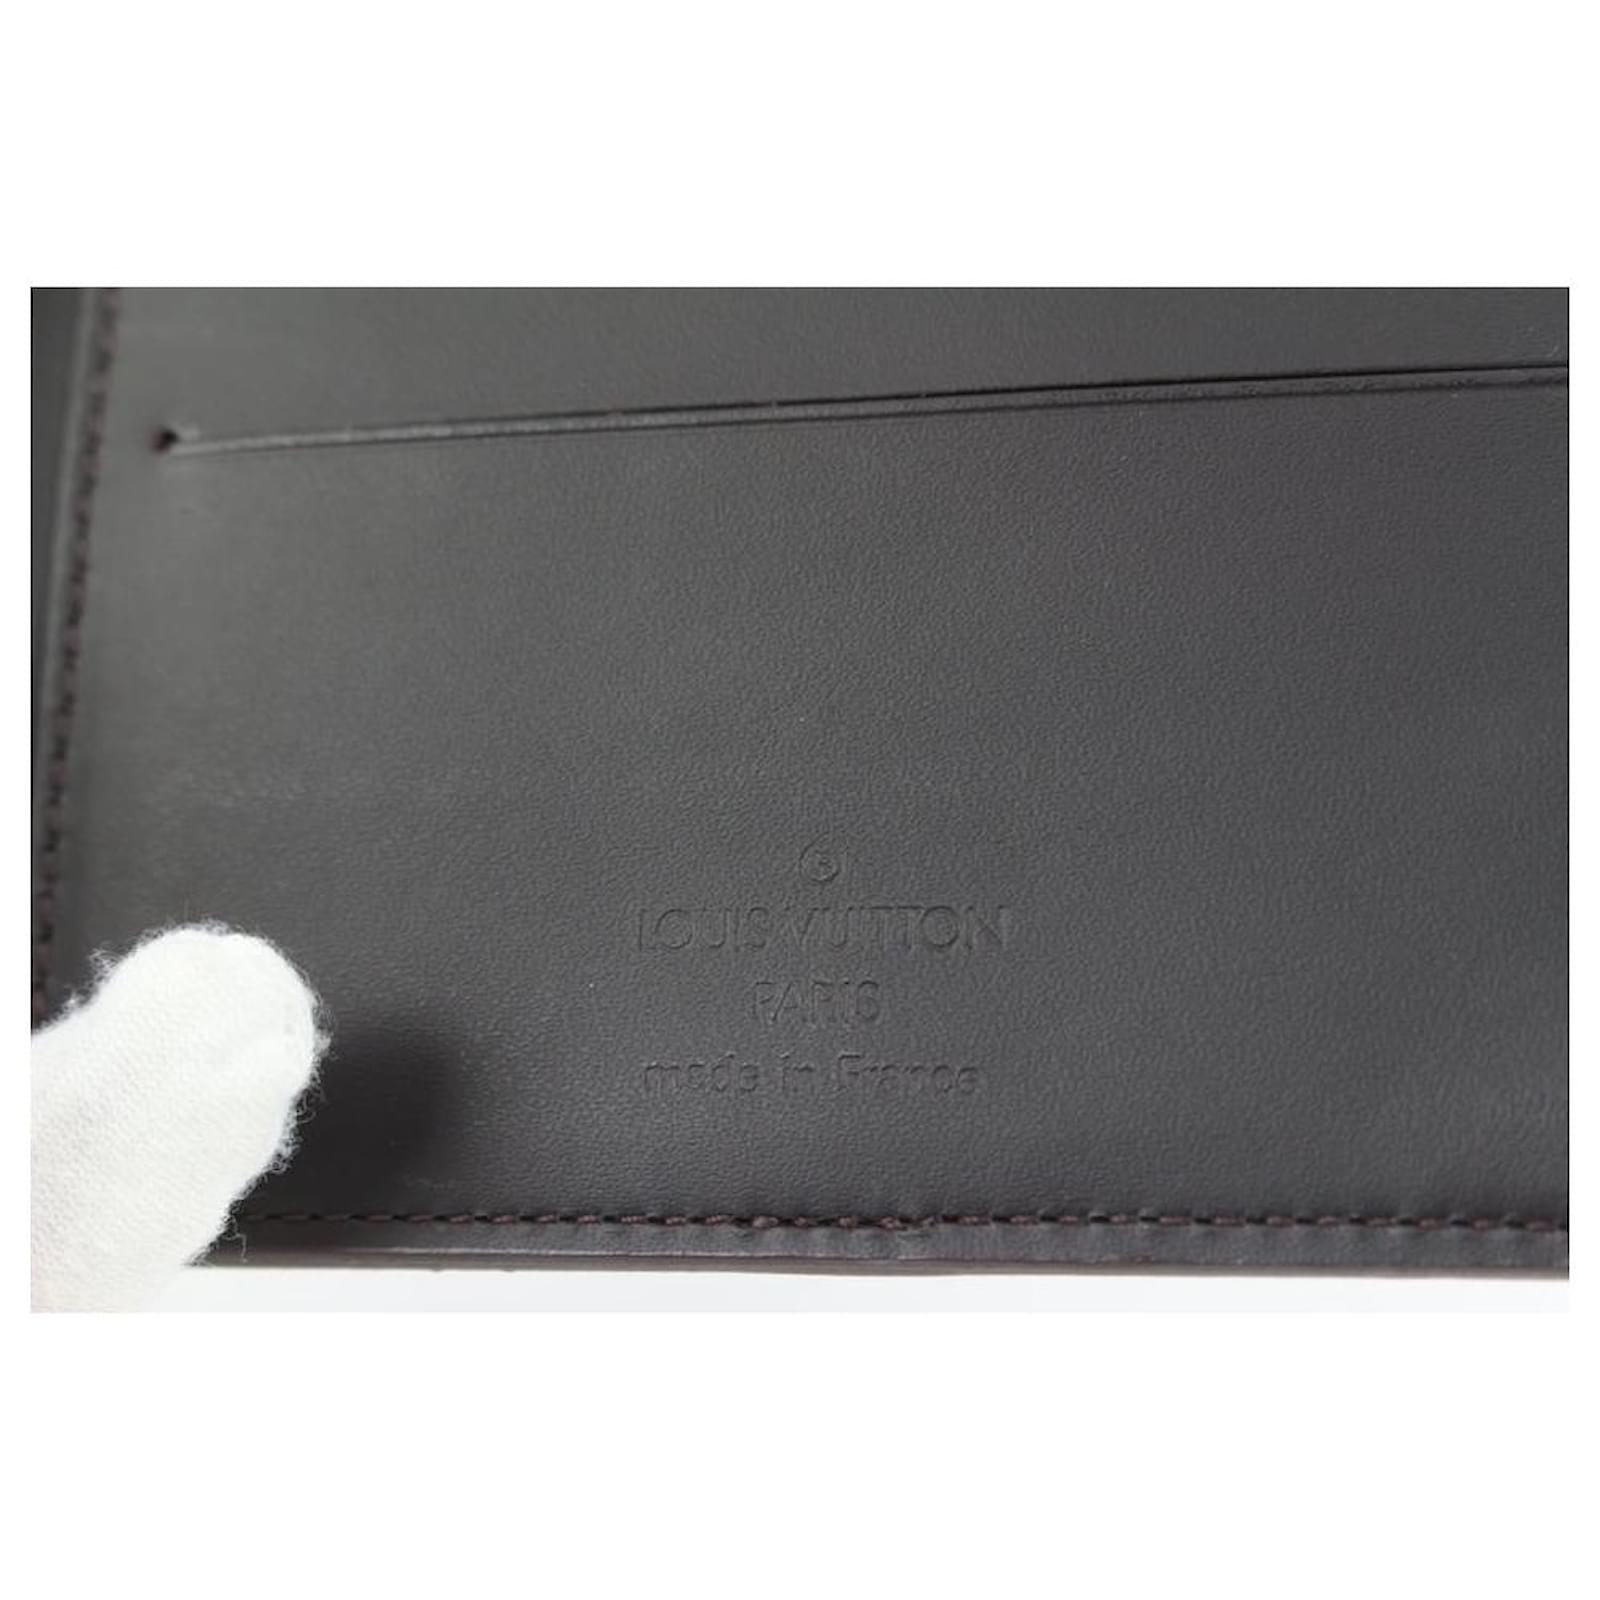 Louis Vuitton Long Wallet - Monogram Glace Leather